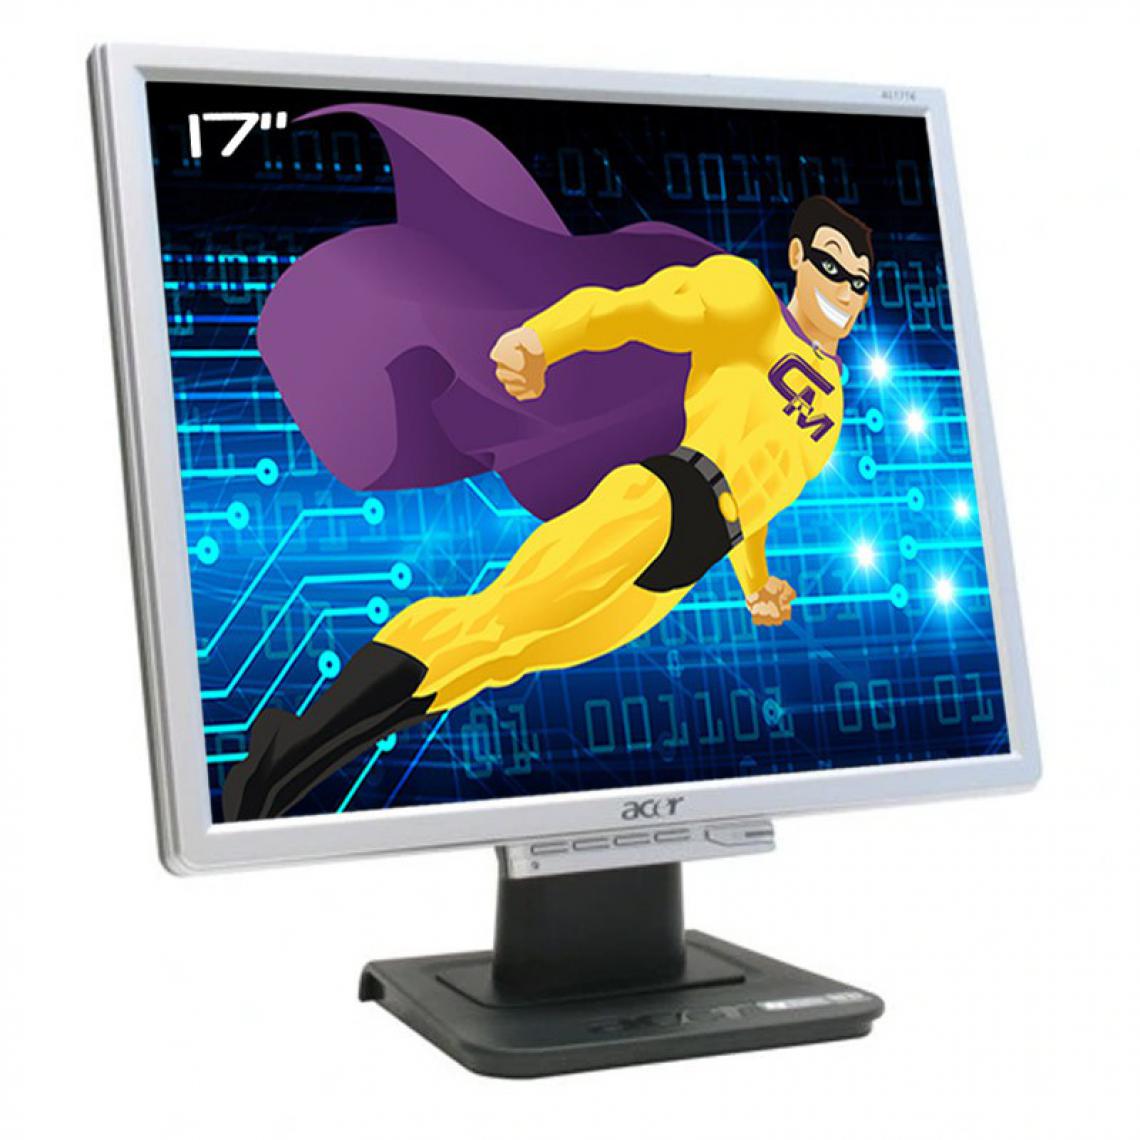 Acer - Ecran PC Pro 17" ACER AL1716As ET.1716P.175 VGA 5:4 VESA 1280x1024 LCD TFT - Moniteur PC